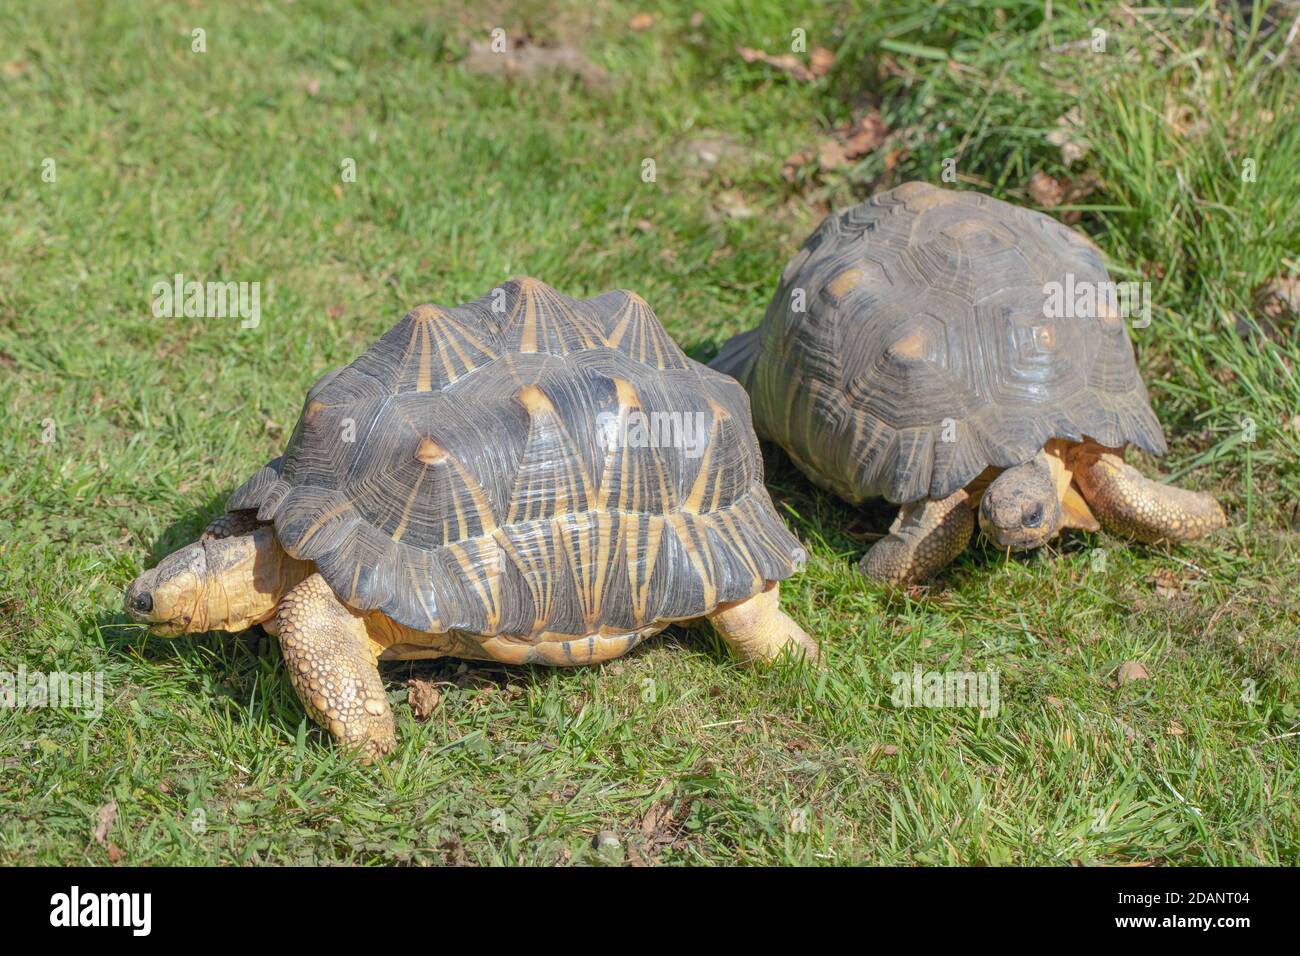 Abgestrahlte Schildkröten (Astrochelys radiata). Zwei Erwachsene zusammen. Profil-, Seiten- und Frontansicht. Auf Land gehen, terrestrisch, Stockfoto